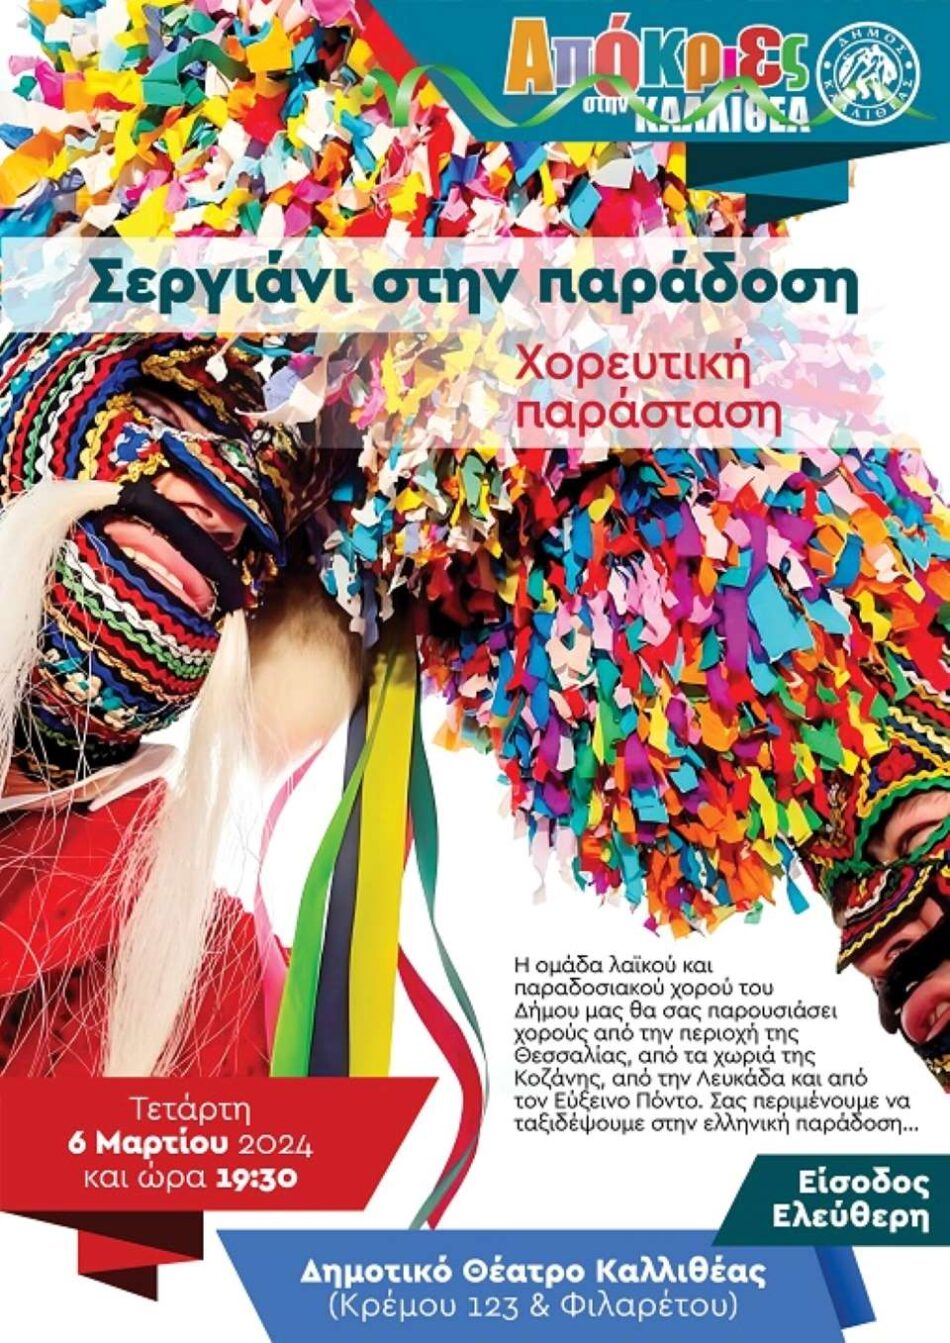 Εκδήλωση στην Καλλιθέα με χορούς από Θεσσαλία, Κοζάνη, Λευκάδα και Εύξεινο Πόντο                                          63 950x1343